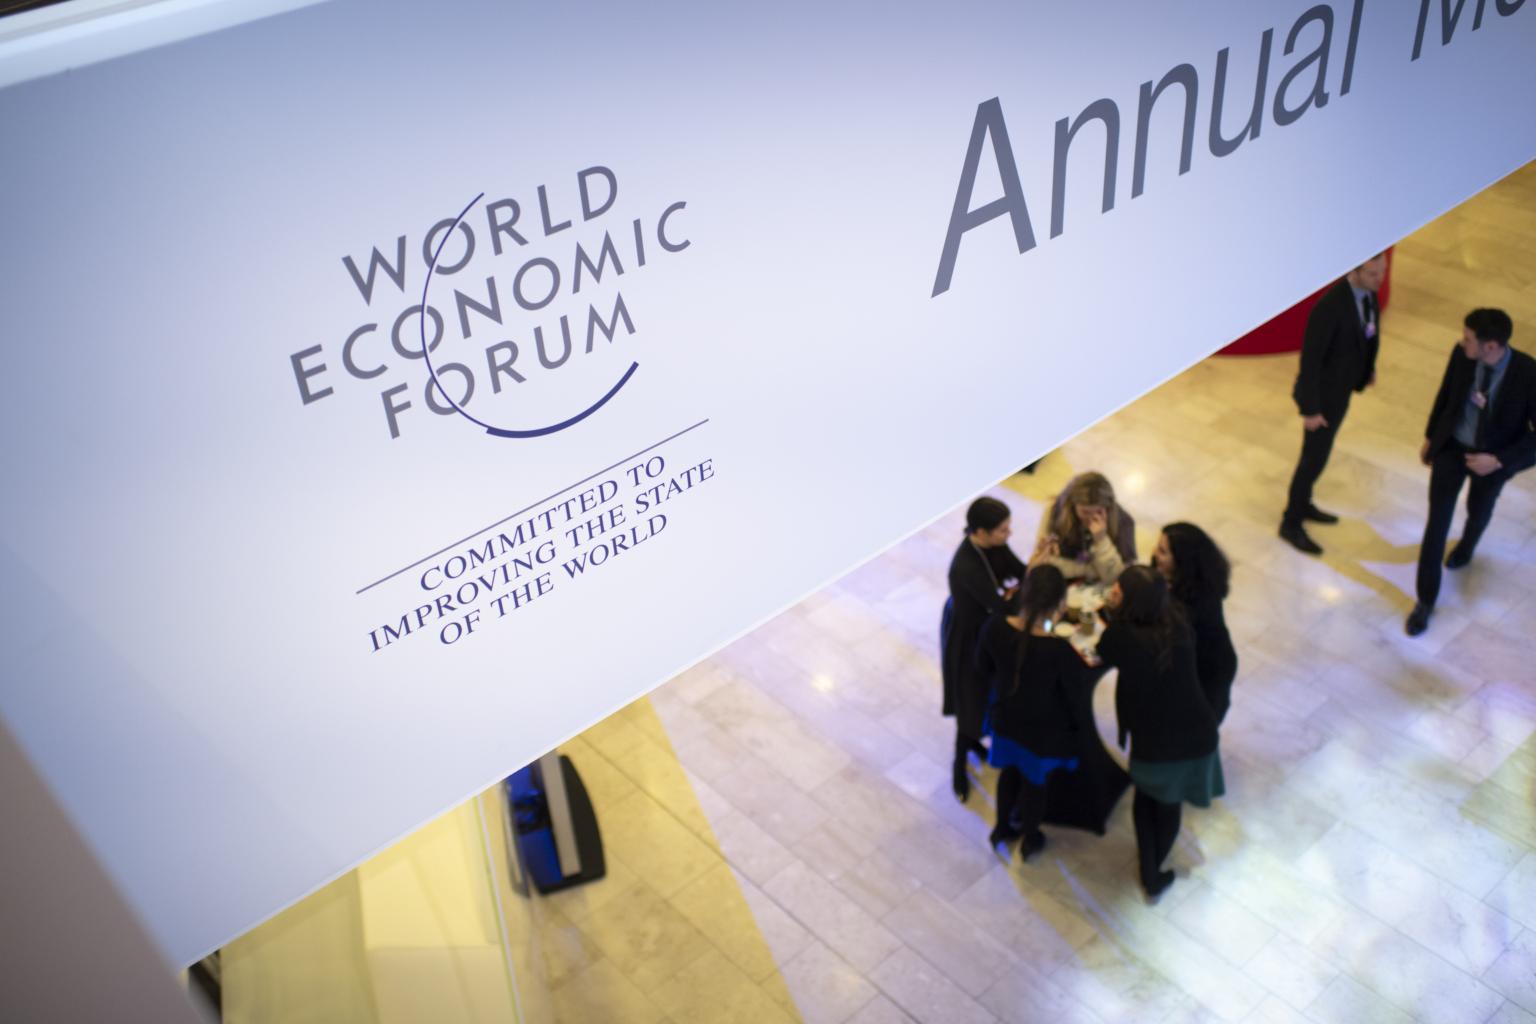 Криптовалюта будуть присвячені дві сесії Всесвітнього економічного форуму